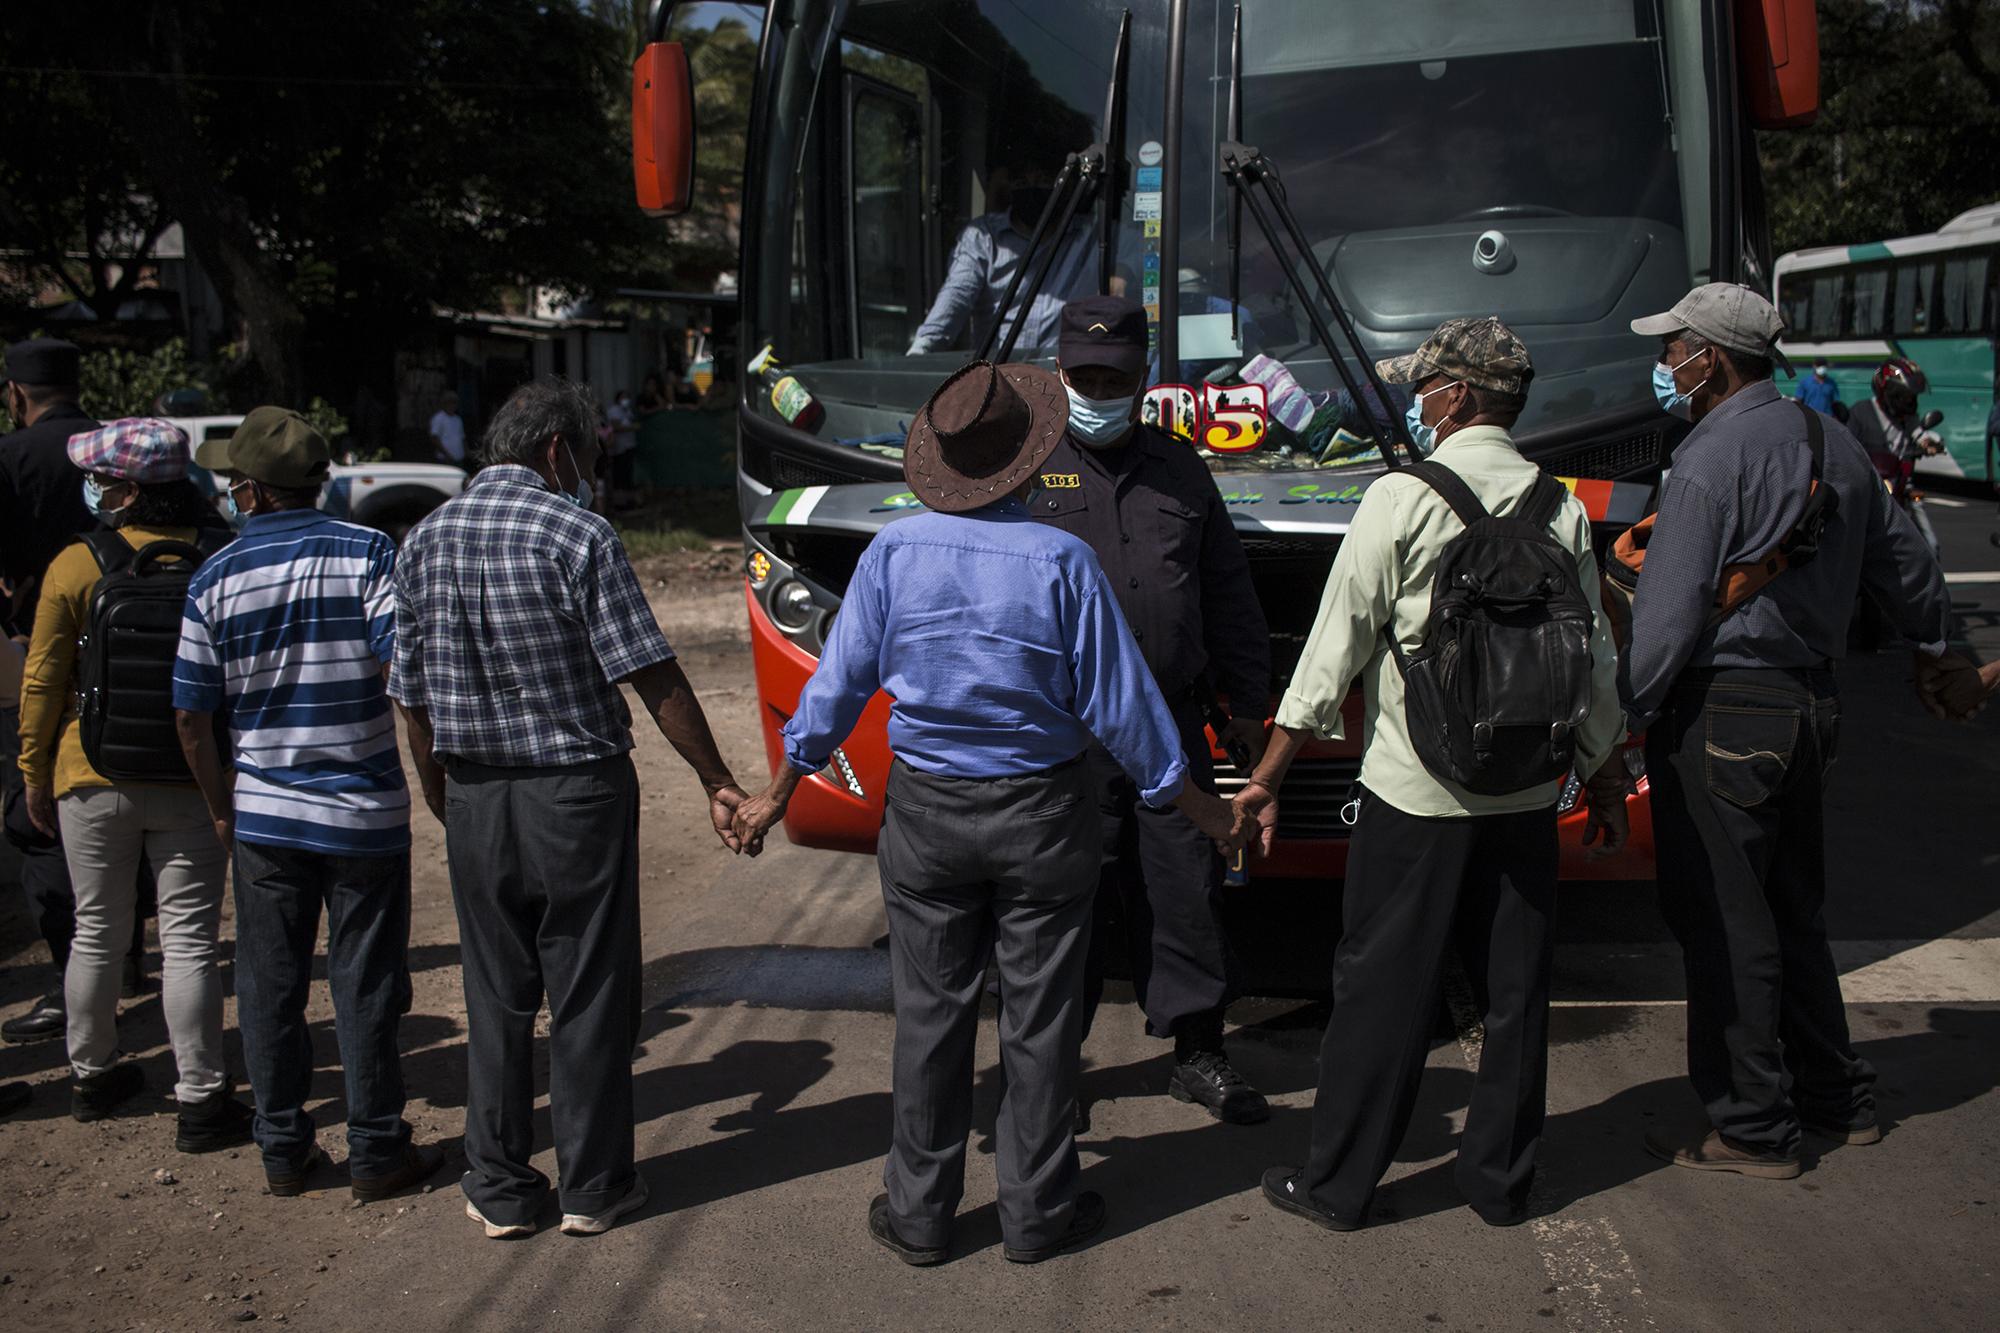 La Policía montó un retén en el cantón Tres Ceibas, del municipio de Armenia para revisar autobuses que se dirigían a la marcha. Los manifestantes bloquearon ambos carriles de la carretera, en protesta, después de una hora y media de estar retenidos. Foto de El Faro: Víctor Peña. 